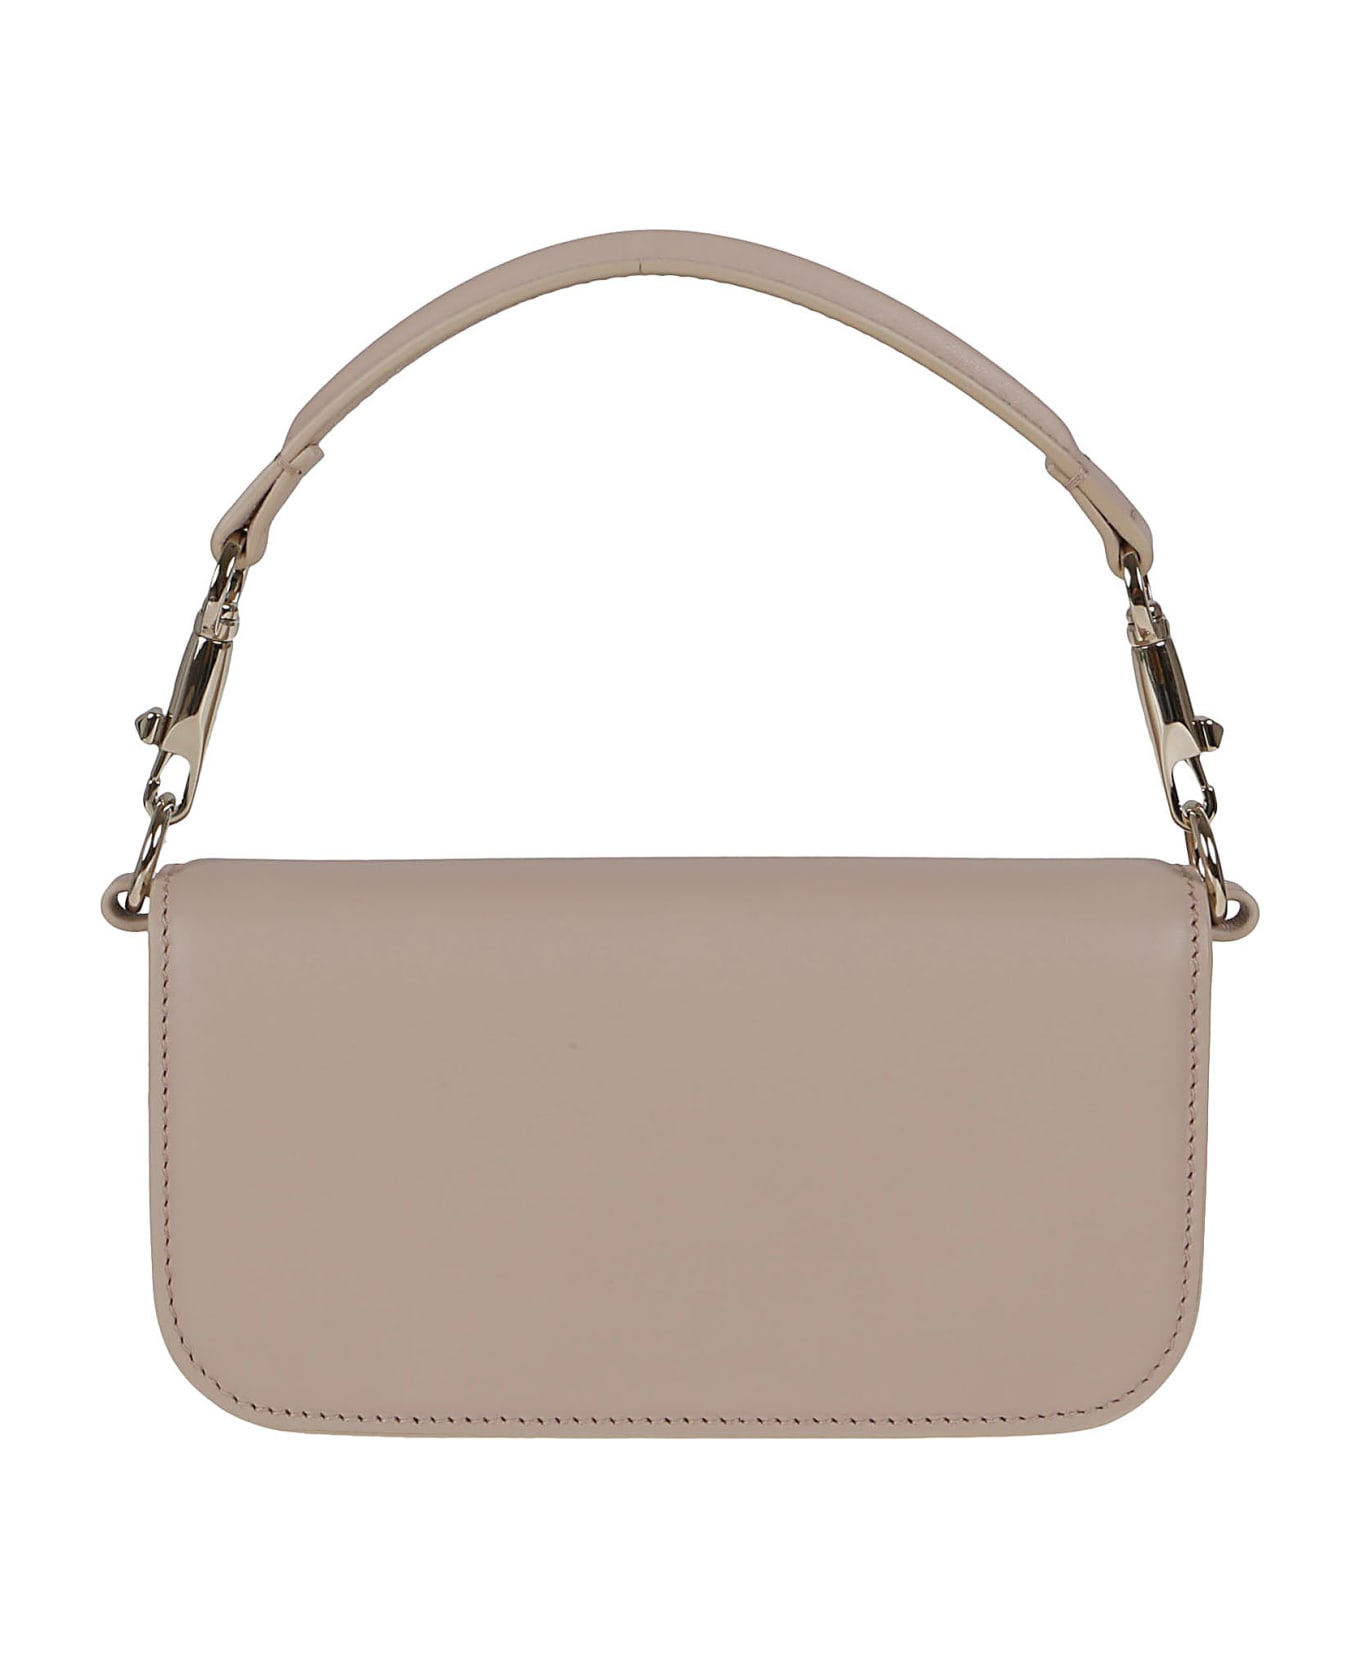 Valentino Garavani Small Shoulder Bag Loco` - Double T tote bag